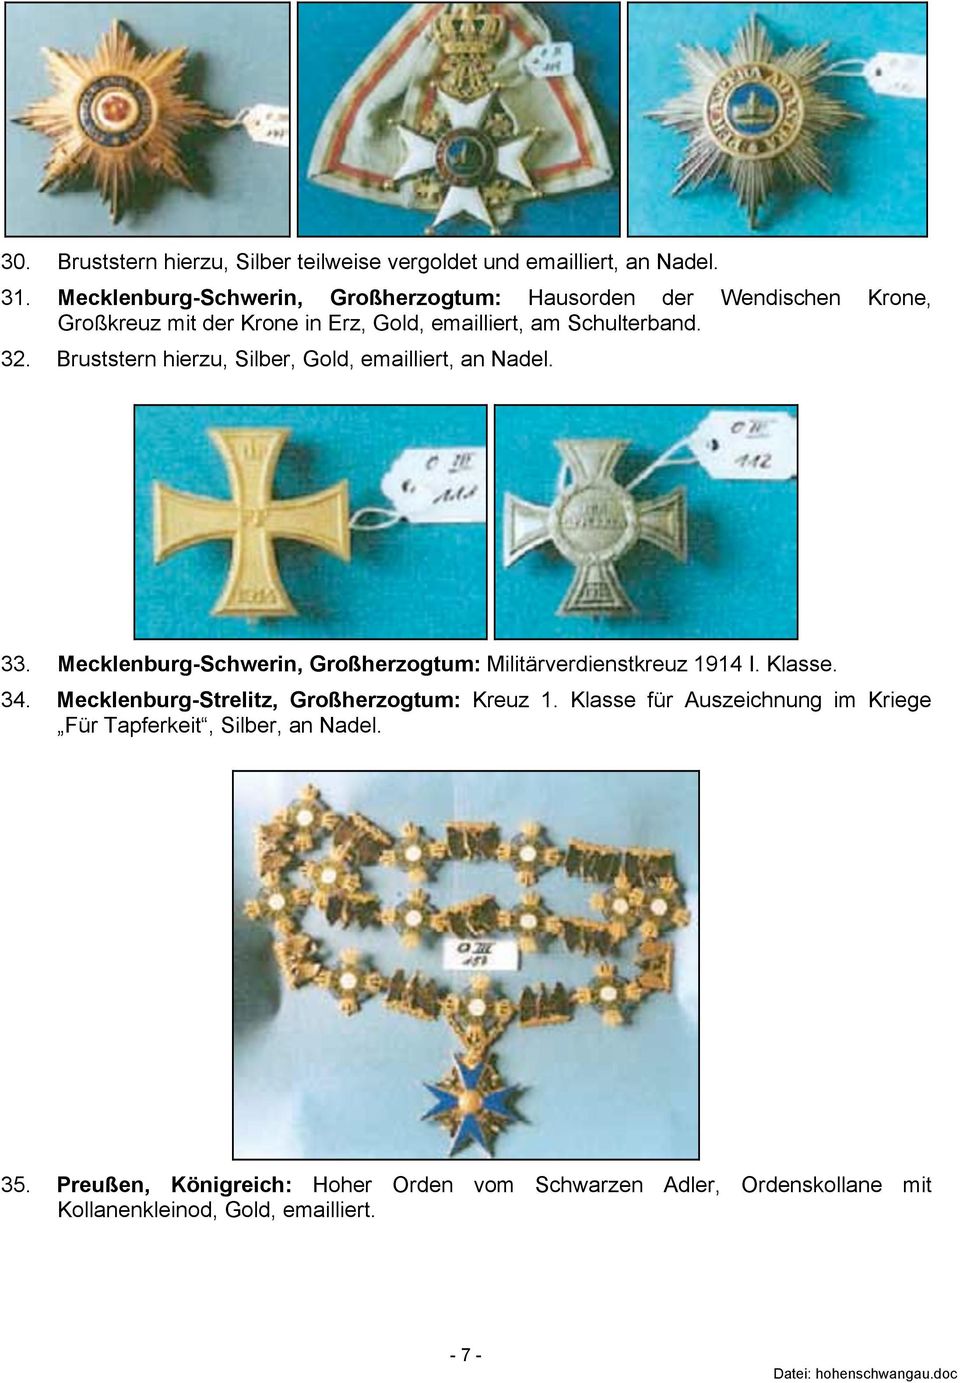 Bruststern hierzu, Silber, Gold, emailliert, an Nadel. 33. Mecklenburg-Schwerin, Großherzogtum: Militärverdienstkreuz 1914 I. Klasse. 34.